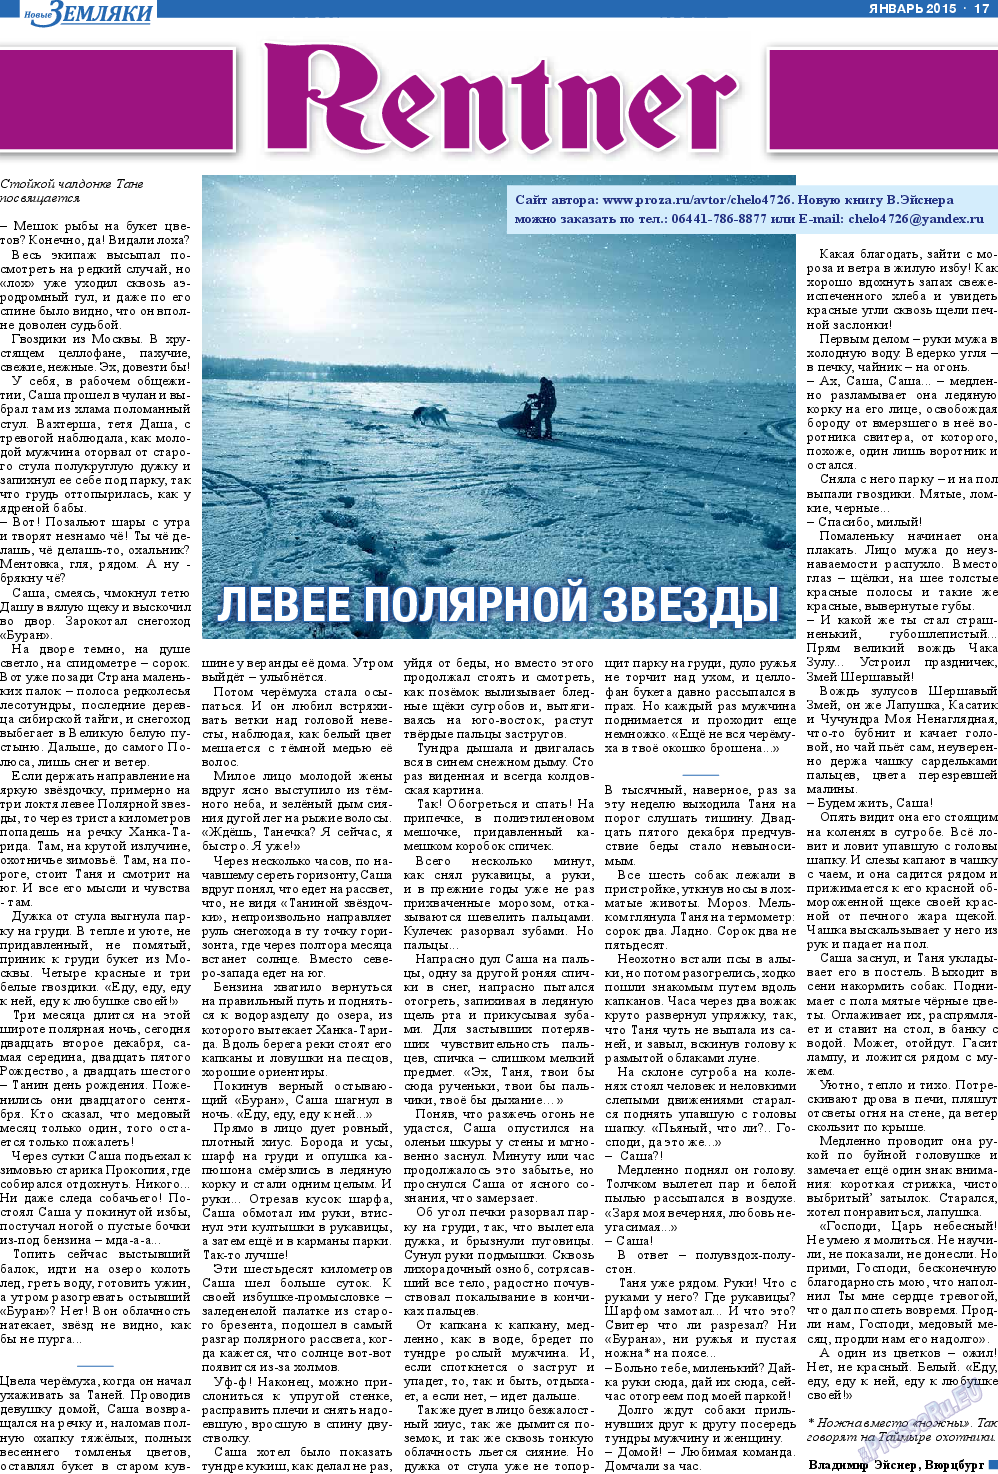 Новые Земляки, газета. 2015 №1 стр.17